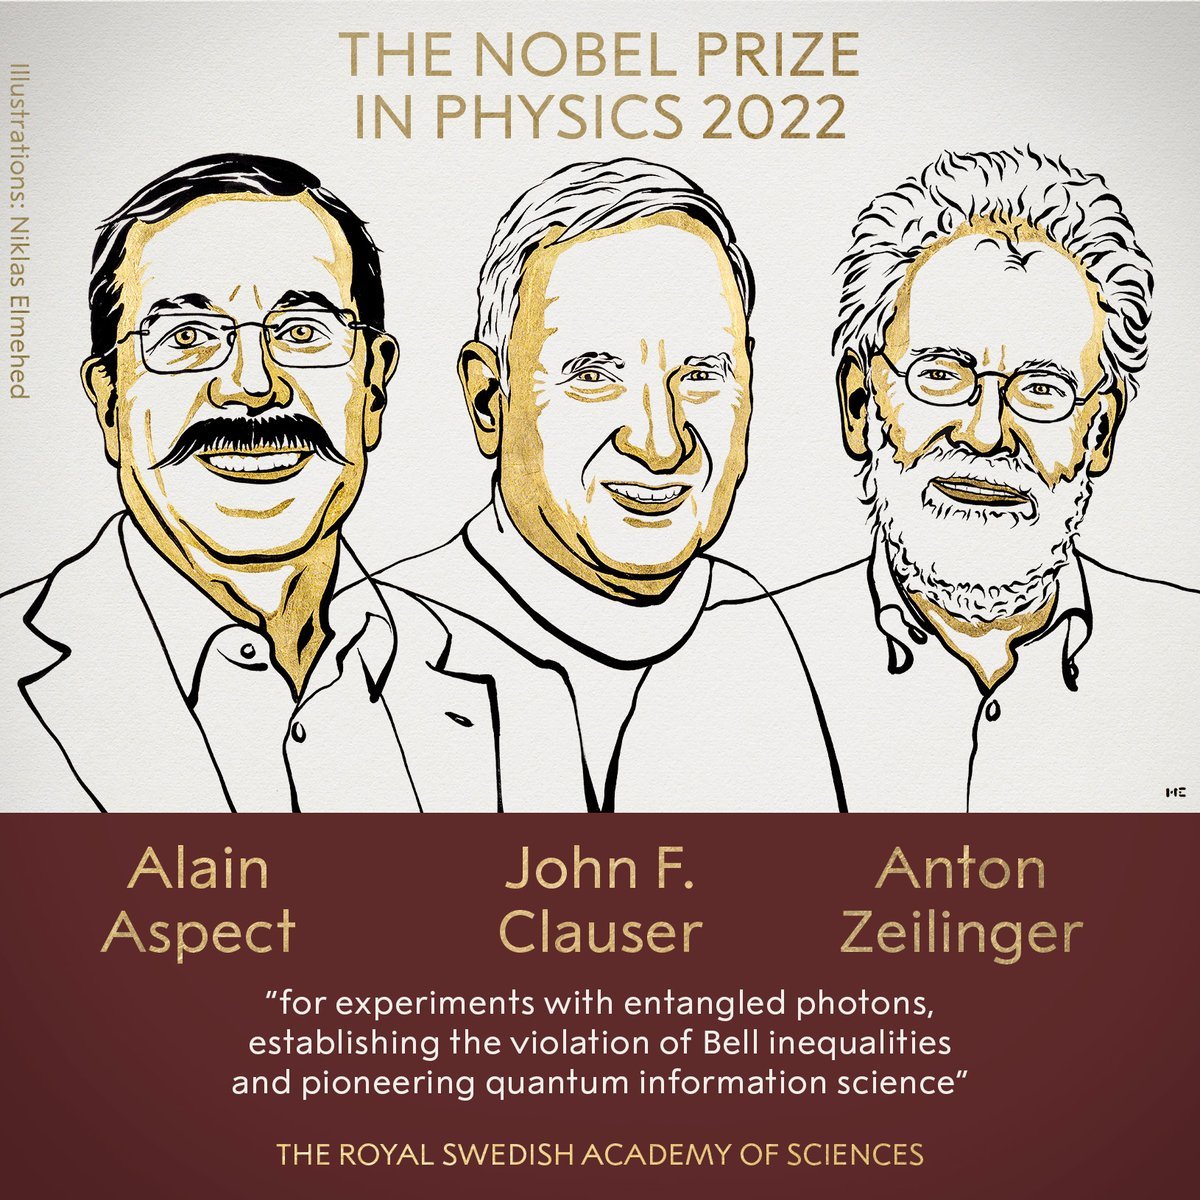 2022 Nobel Fizik Ödülü nü 3 bilim insanı paylaştı #5